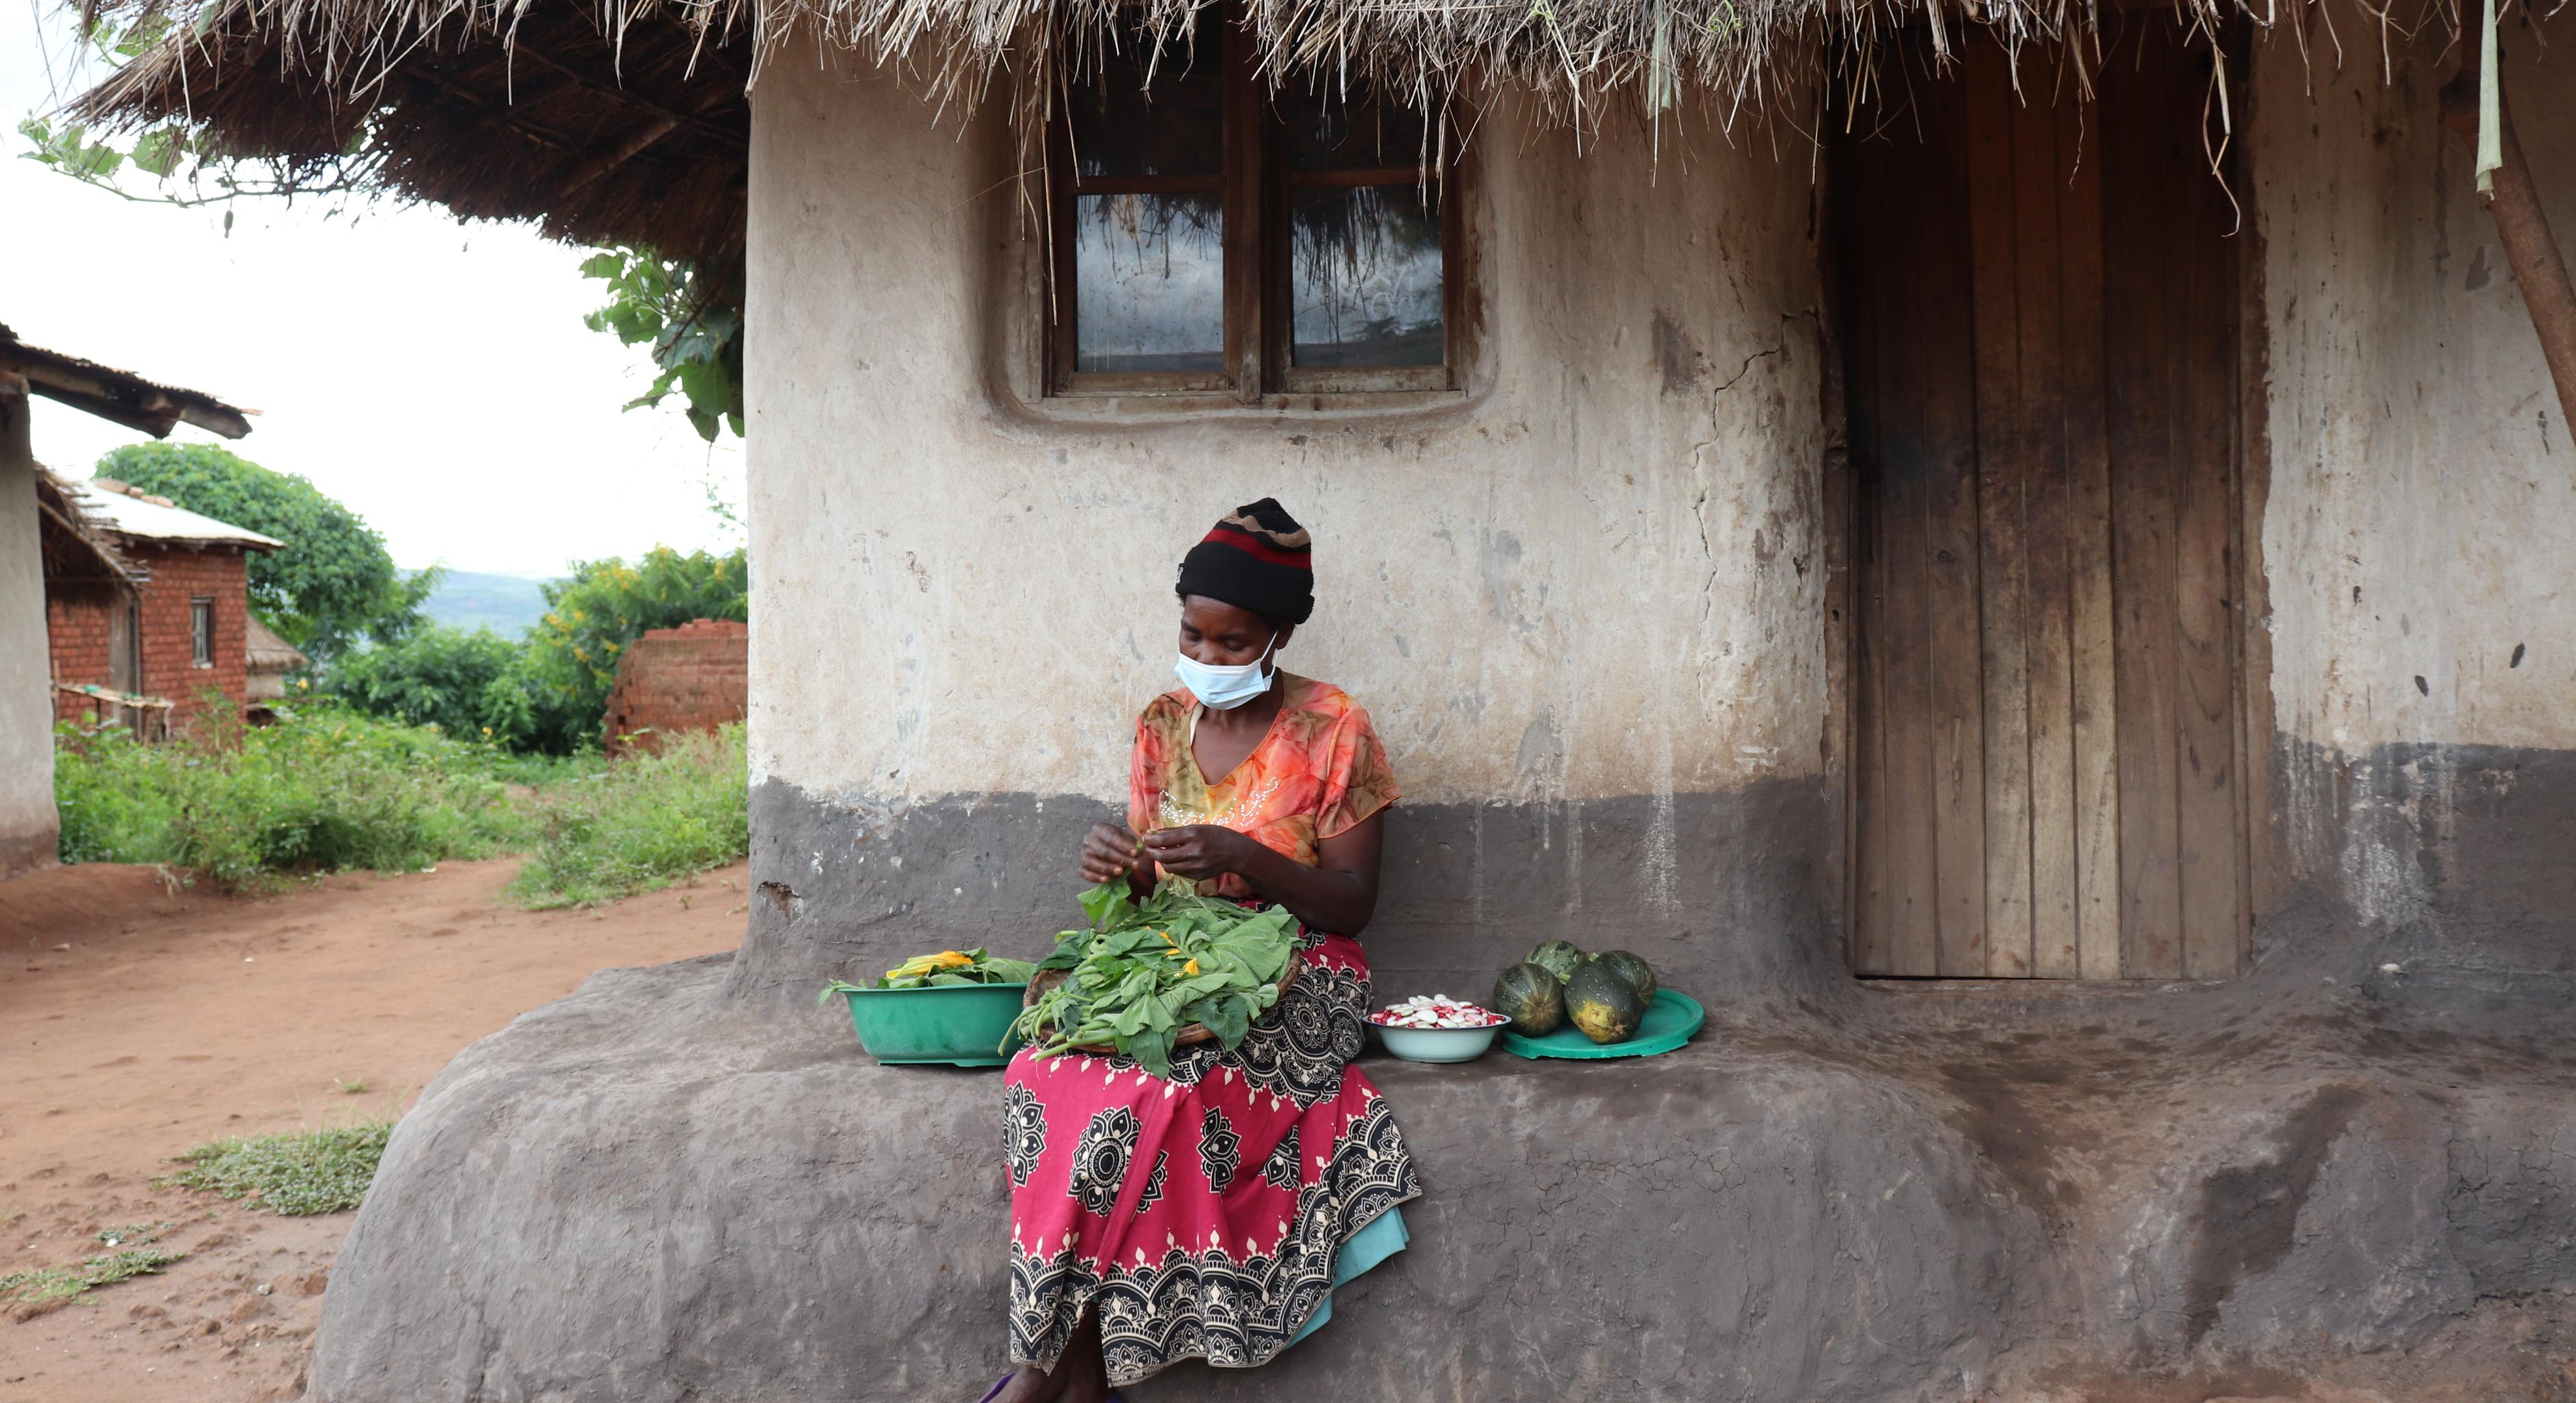 Loveness N'Dindo. mit einem rot-schwarz gemusterten Rock und orangenen T-Shirt sowie Mundschutz bekleidet, sitzt auf einer Steinbank vor ihrem Haus. Auf ihrem Schoß sortiert sie Gemüse. Neben ihr befinden sich weitere Schüsseln mit Früchten. 